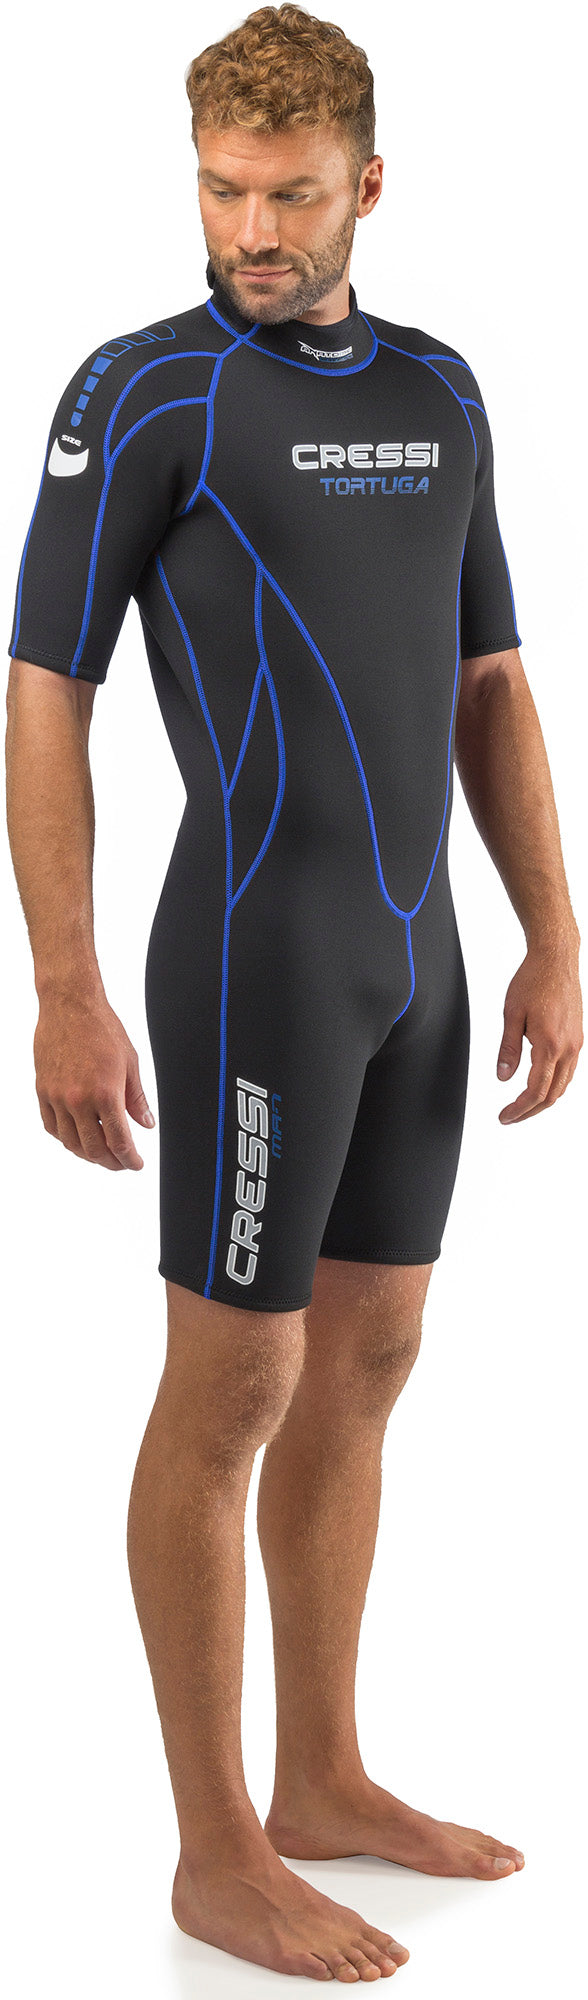 Cressi Shorty Men's Wetsuit for Water Activities - Tortuga 2.5mm Premium Neoprene